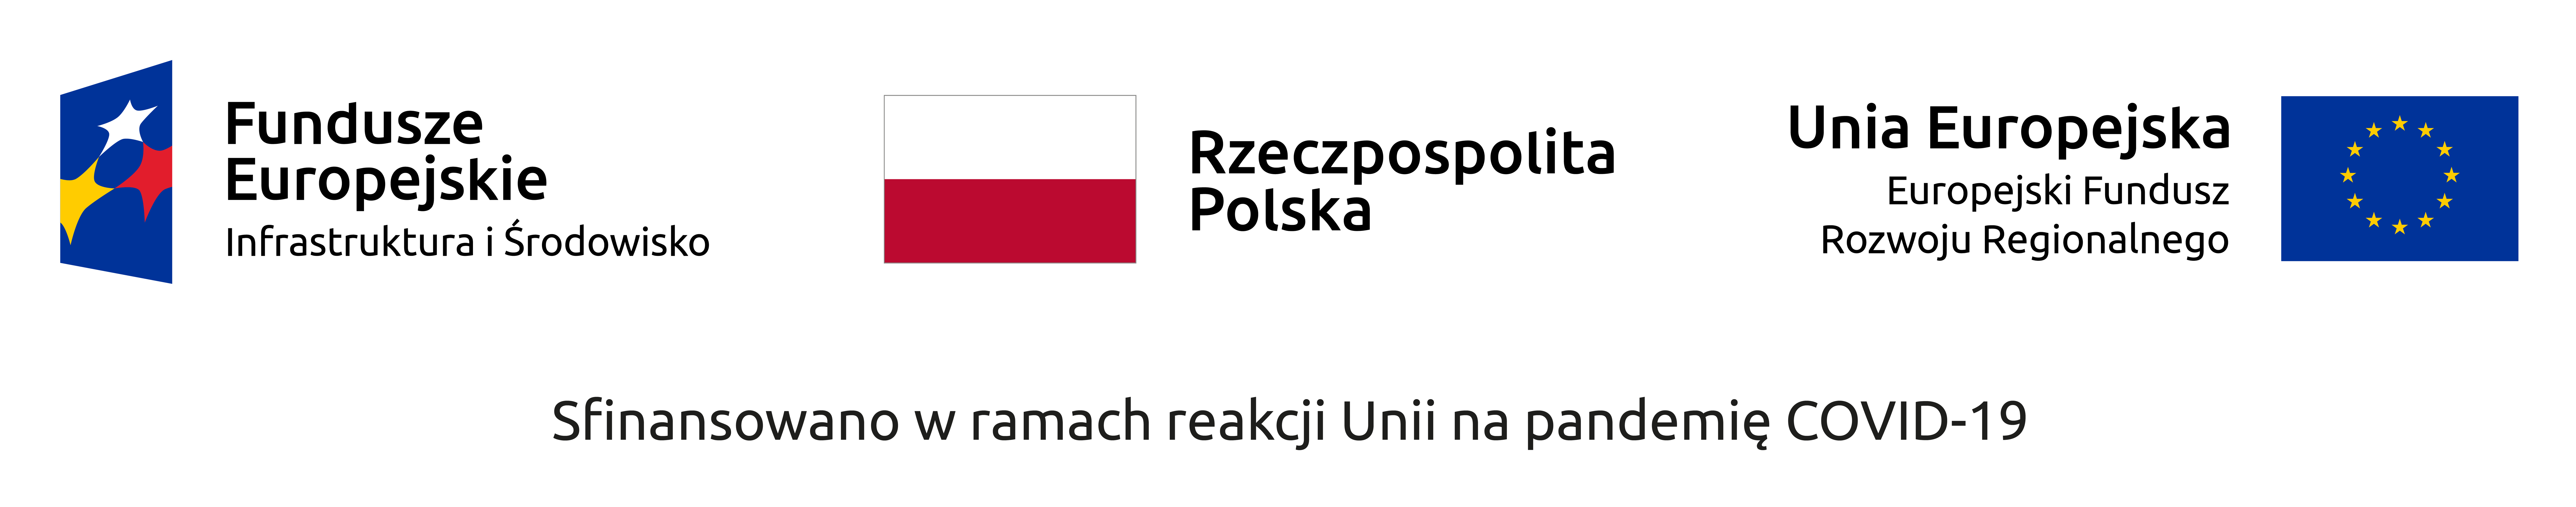 Symbole Funduszy Europejskich, Rzeczypospolitej Polskiej i Unii Europejskiej